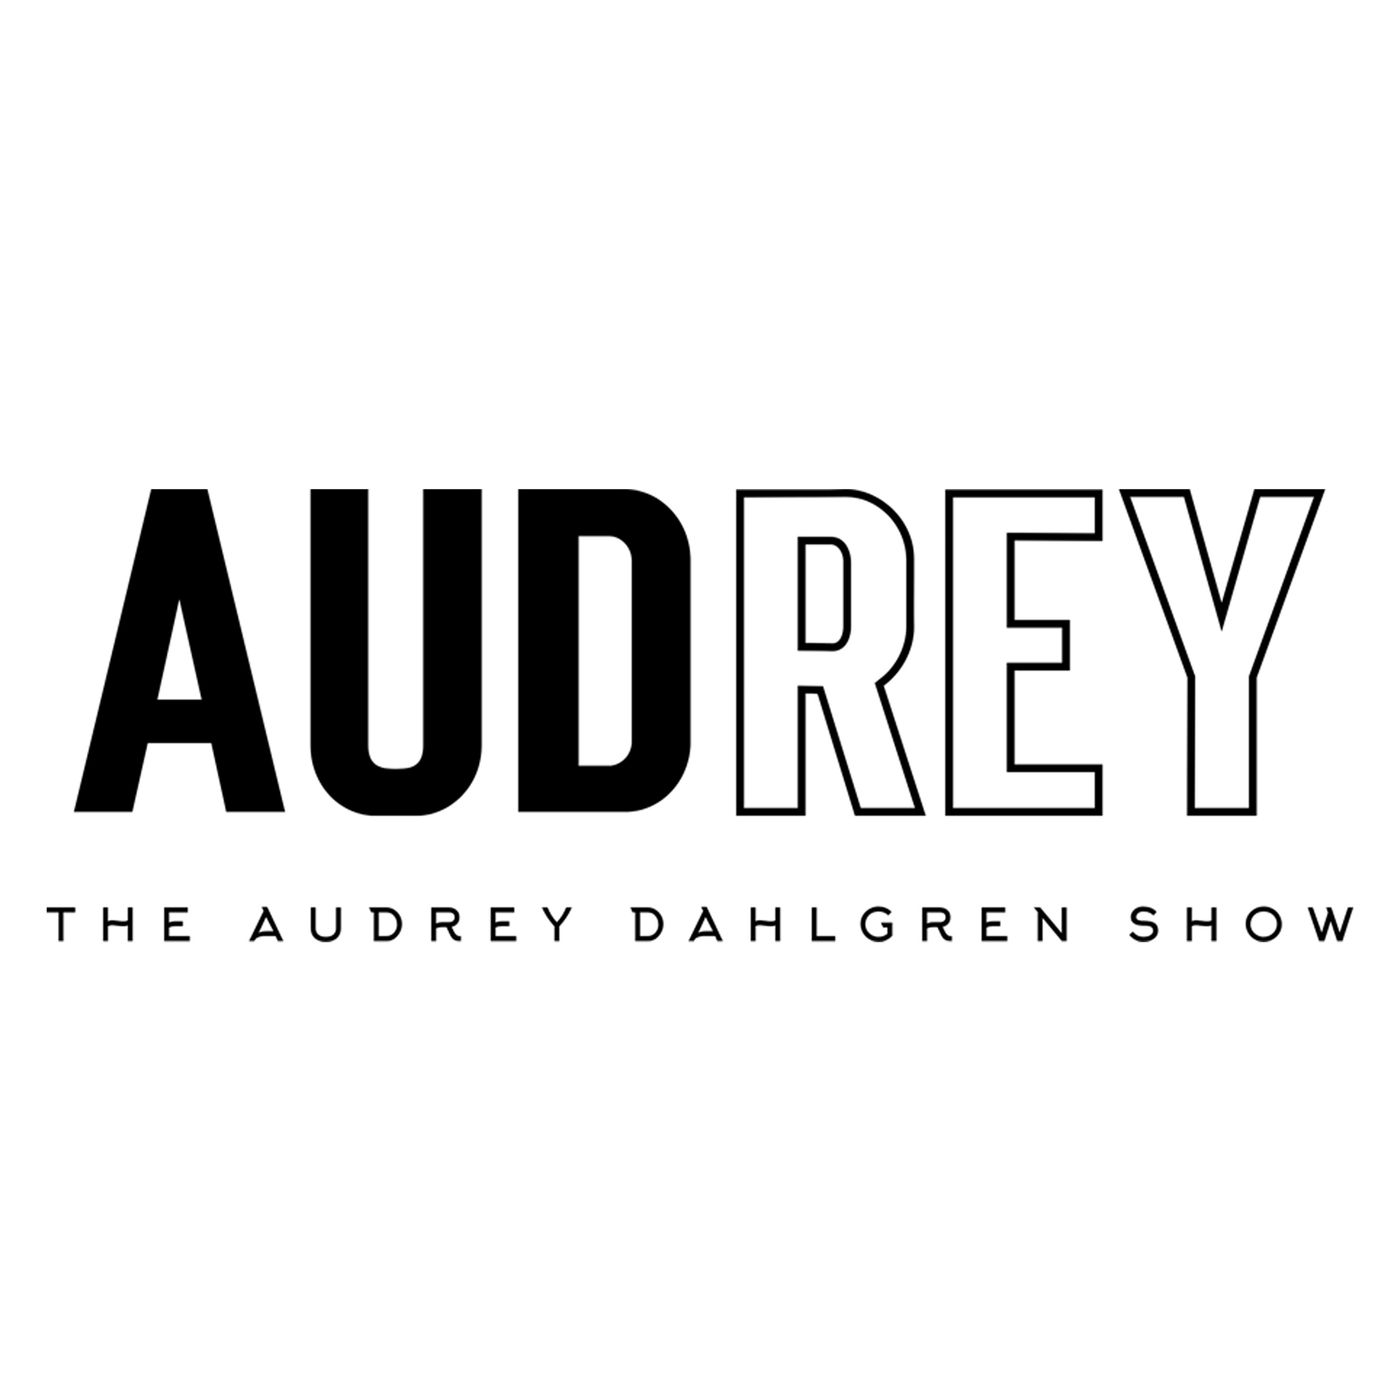 The audrey show